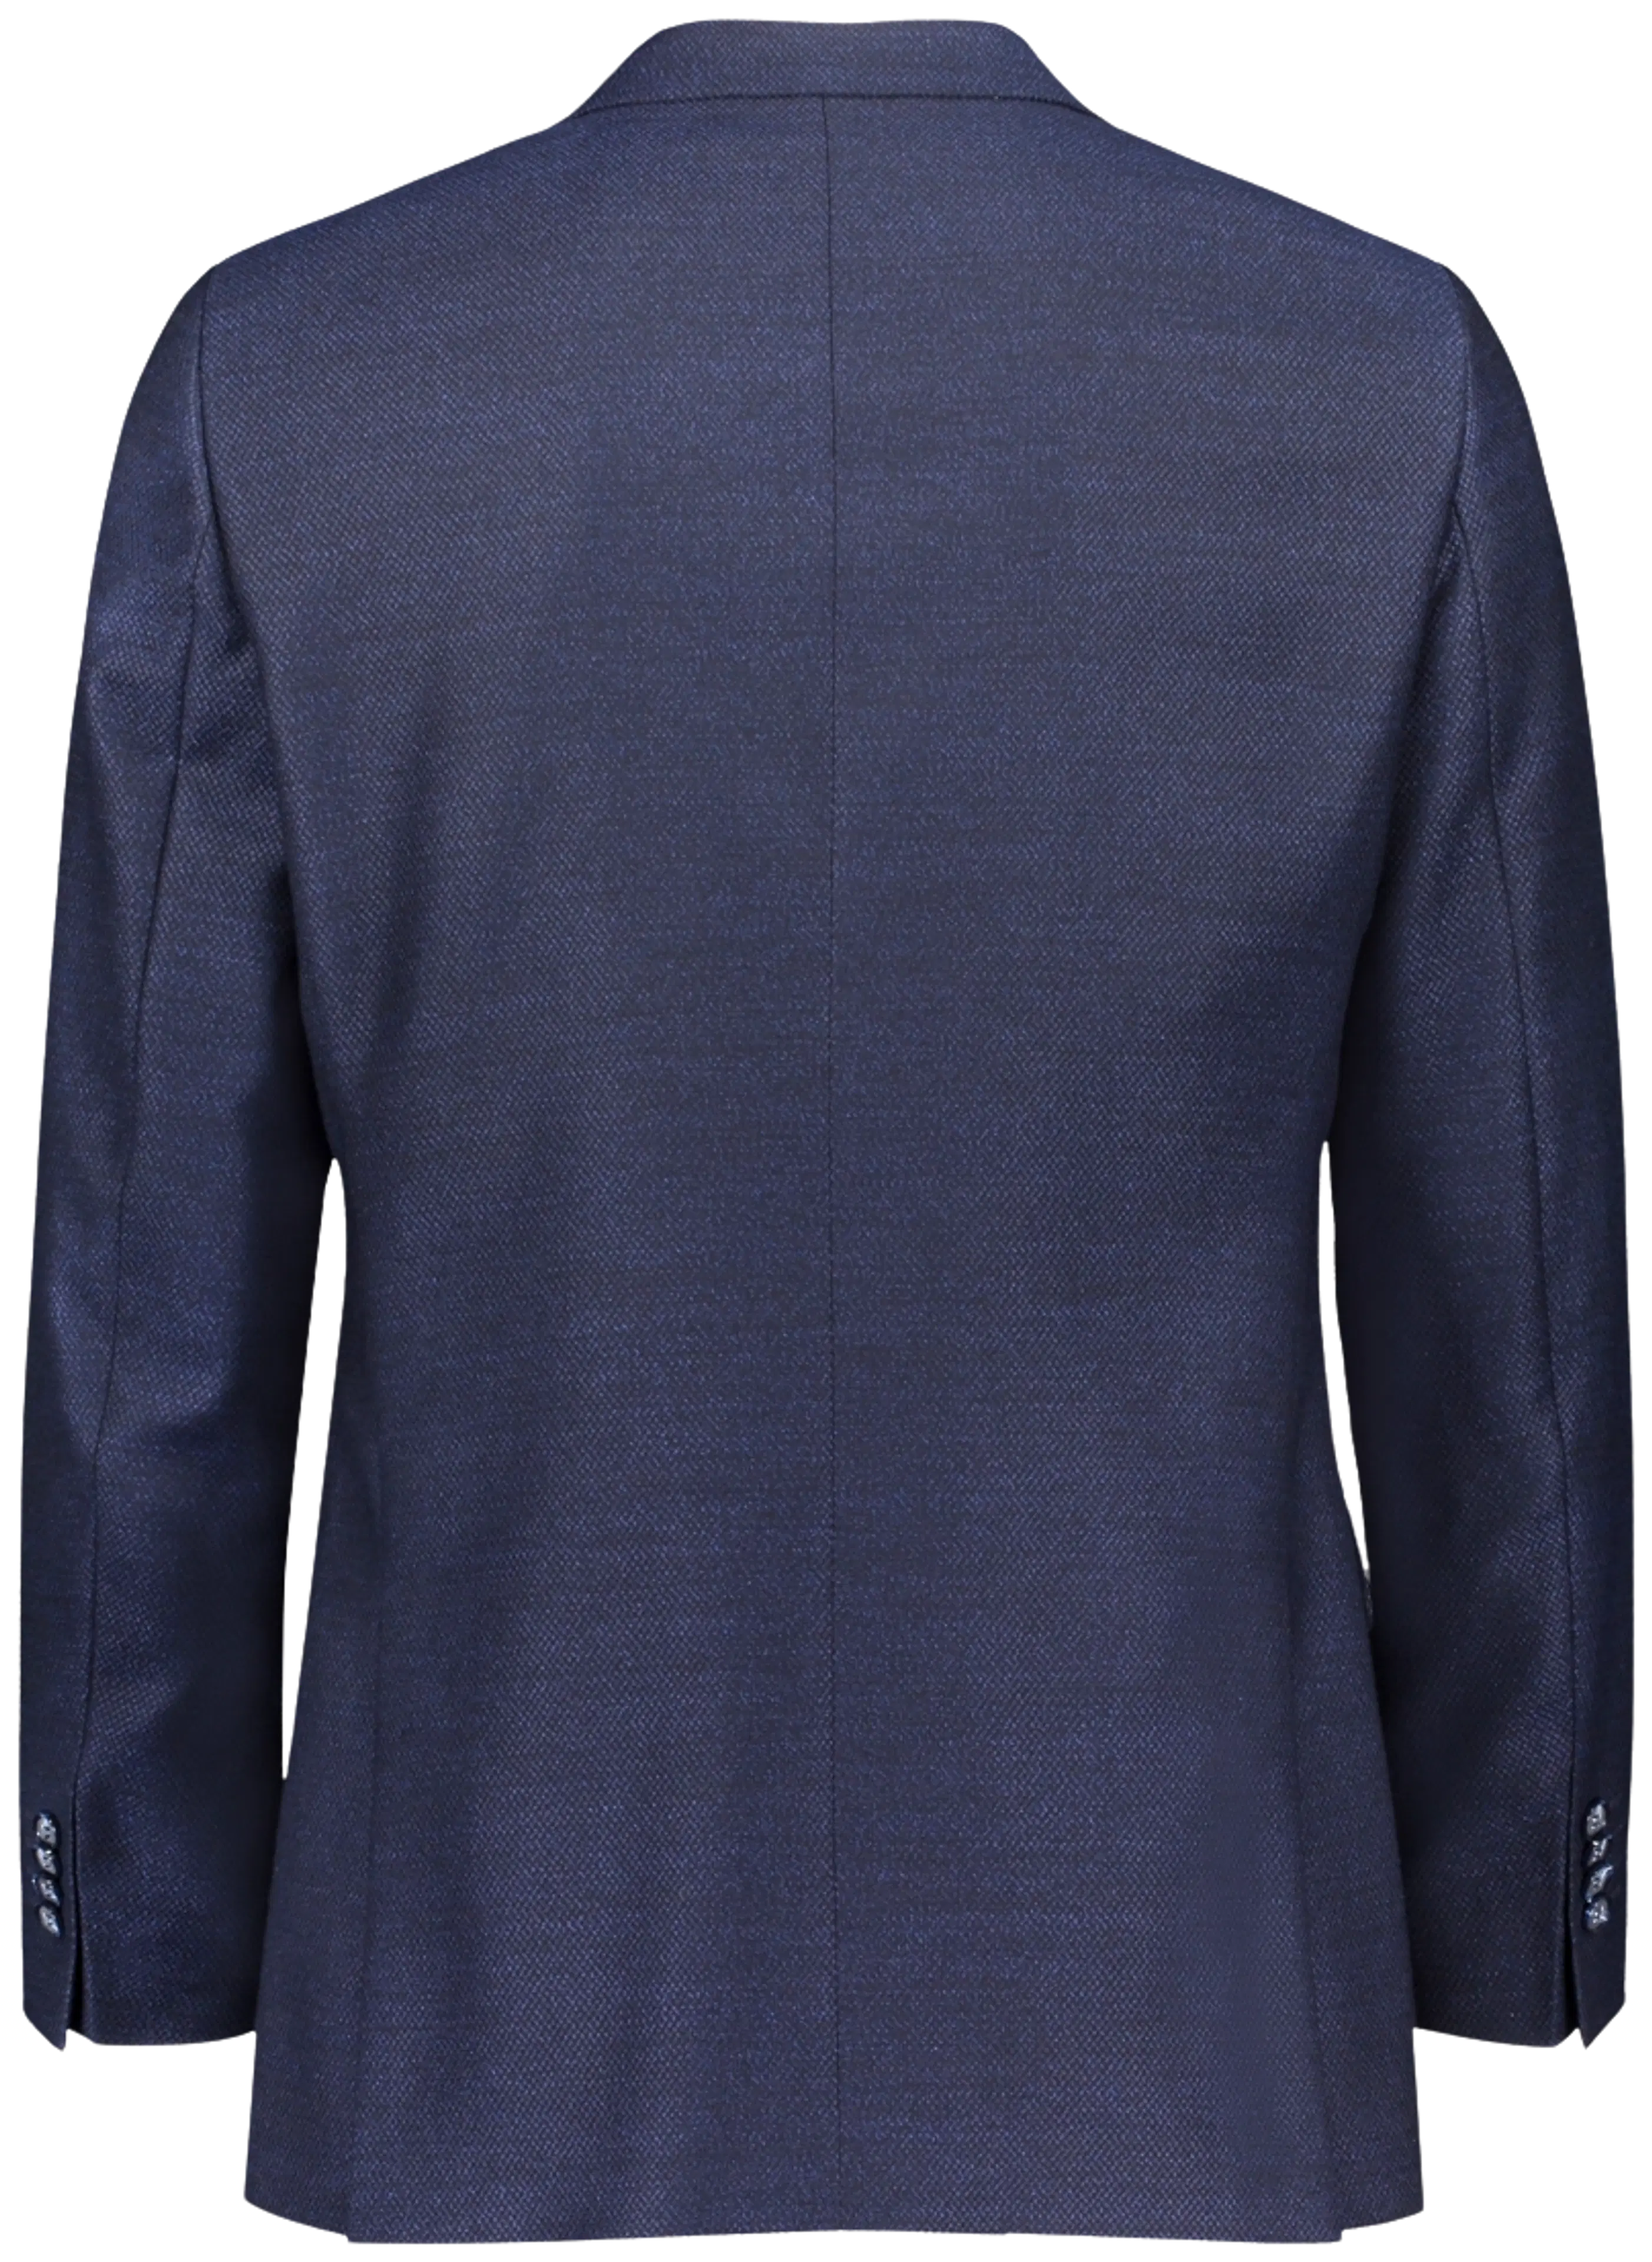 Turo Boros modern fit blazer